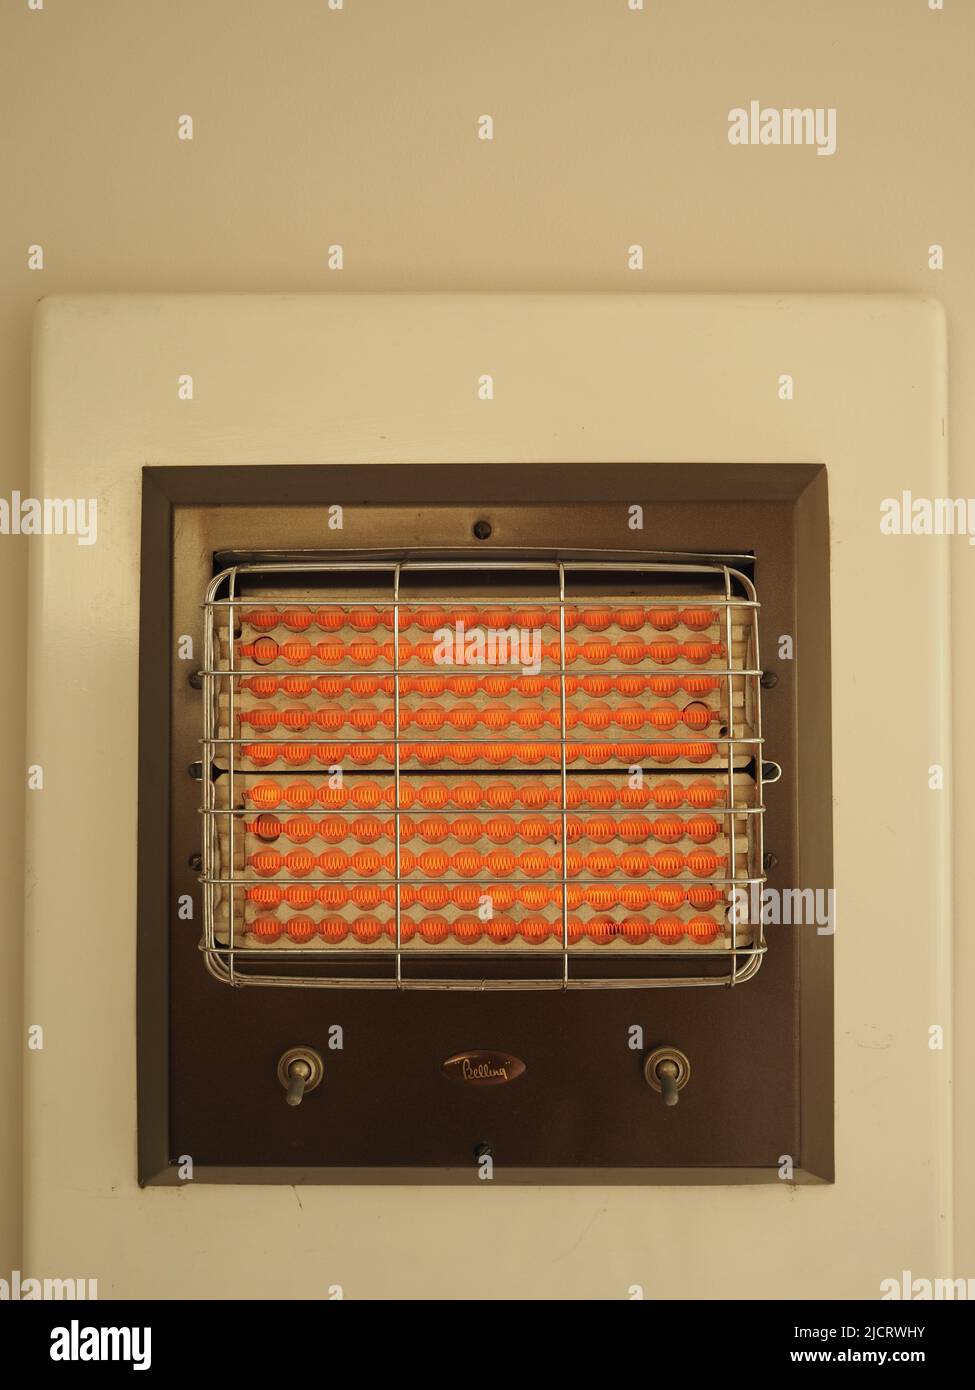 Il riscaldatore elettrico Belling 1950s o 1960s, montato a parete, a doppio controllo, è mostrato in funzione e in arancione brillante. Foto Stock